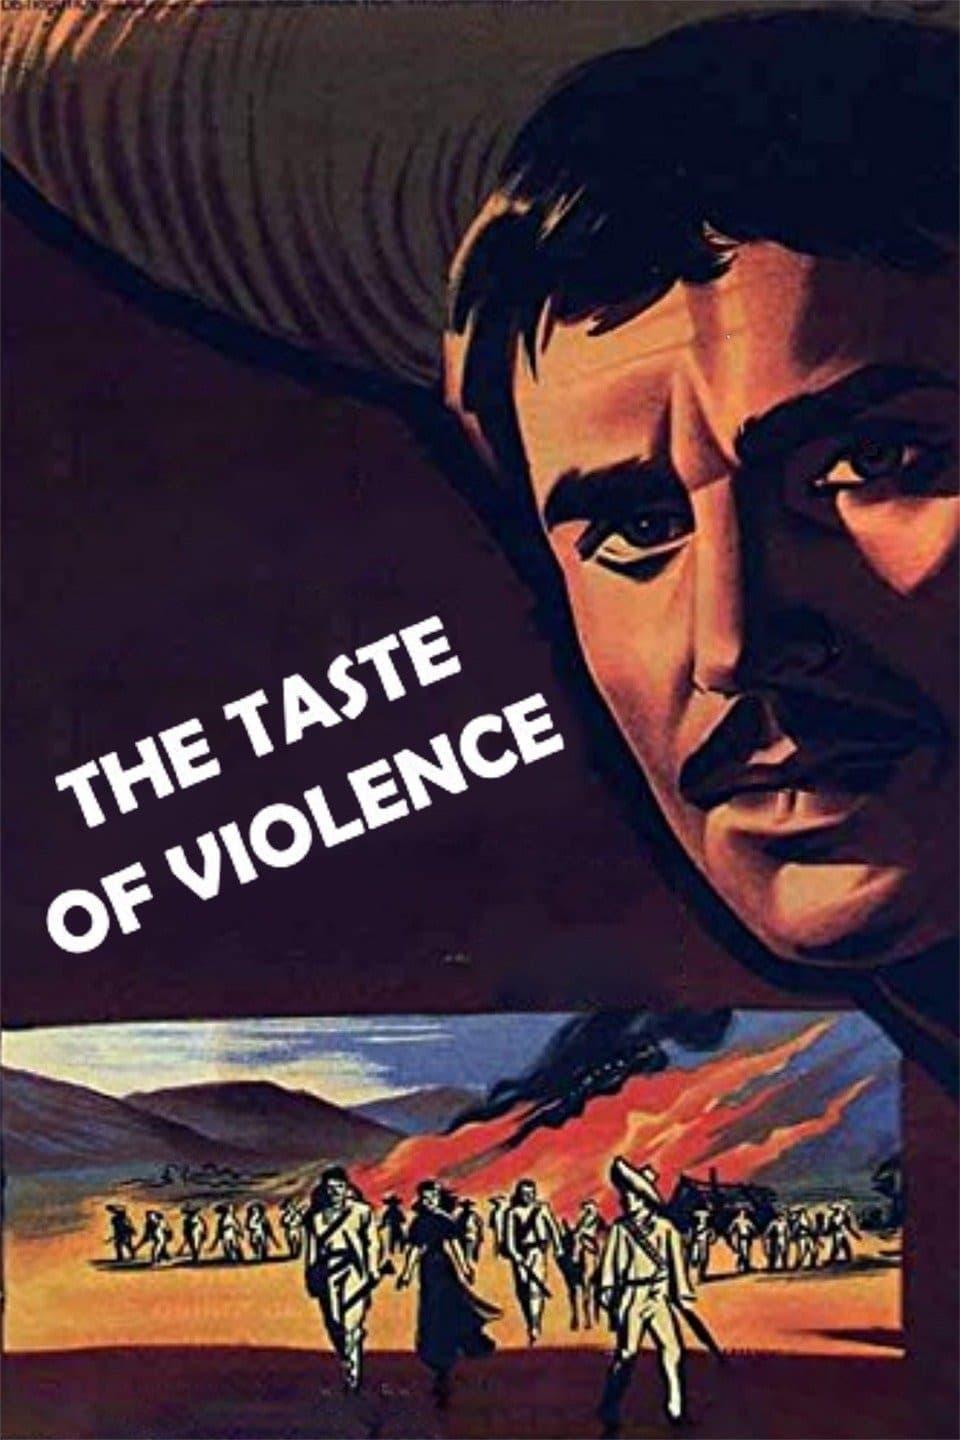 The Taste of Violence poster